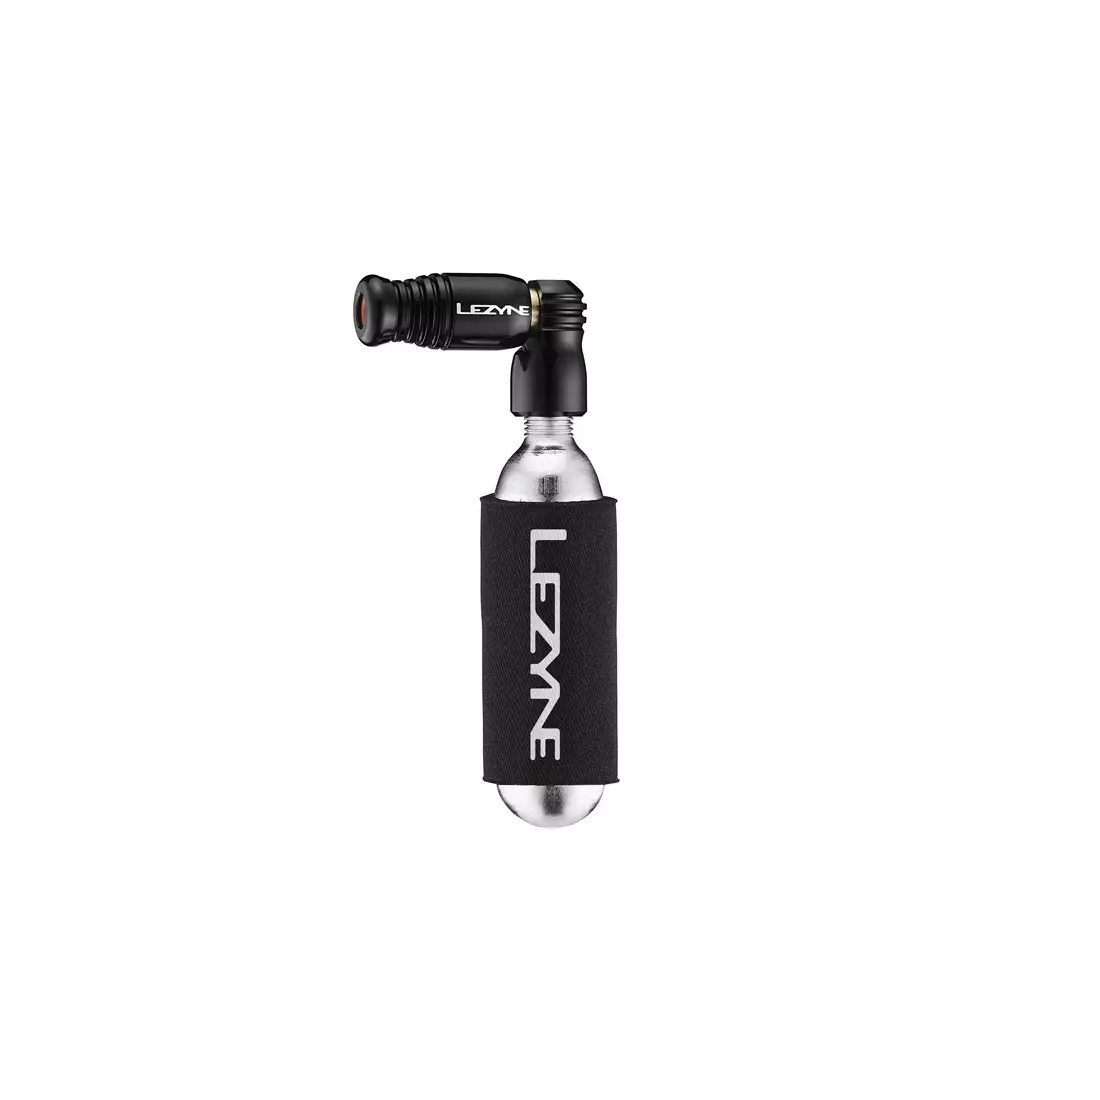 LEZYNE pompka rowerowa ręczna trigger speed drive co2 + nabój gazowy 16g czarny LZN-1-C2-TRSDR-V104